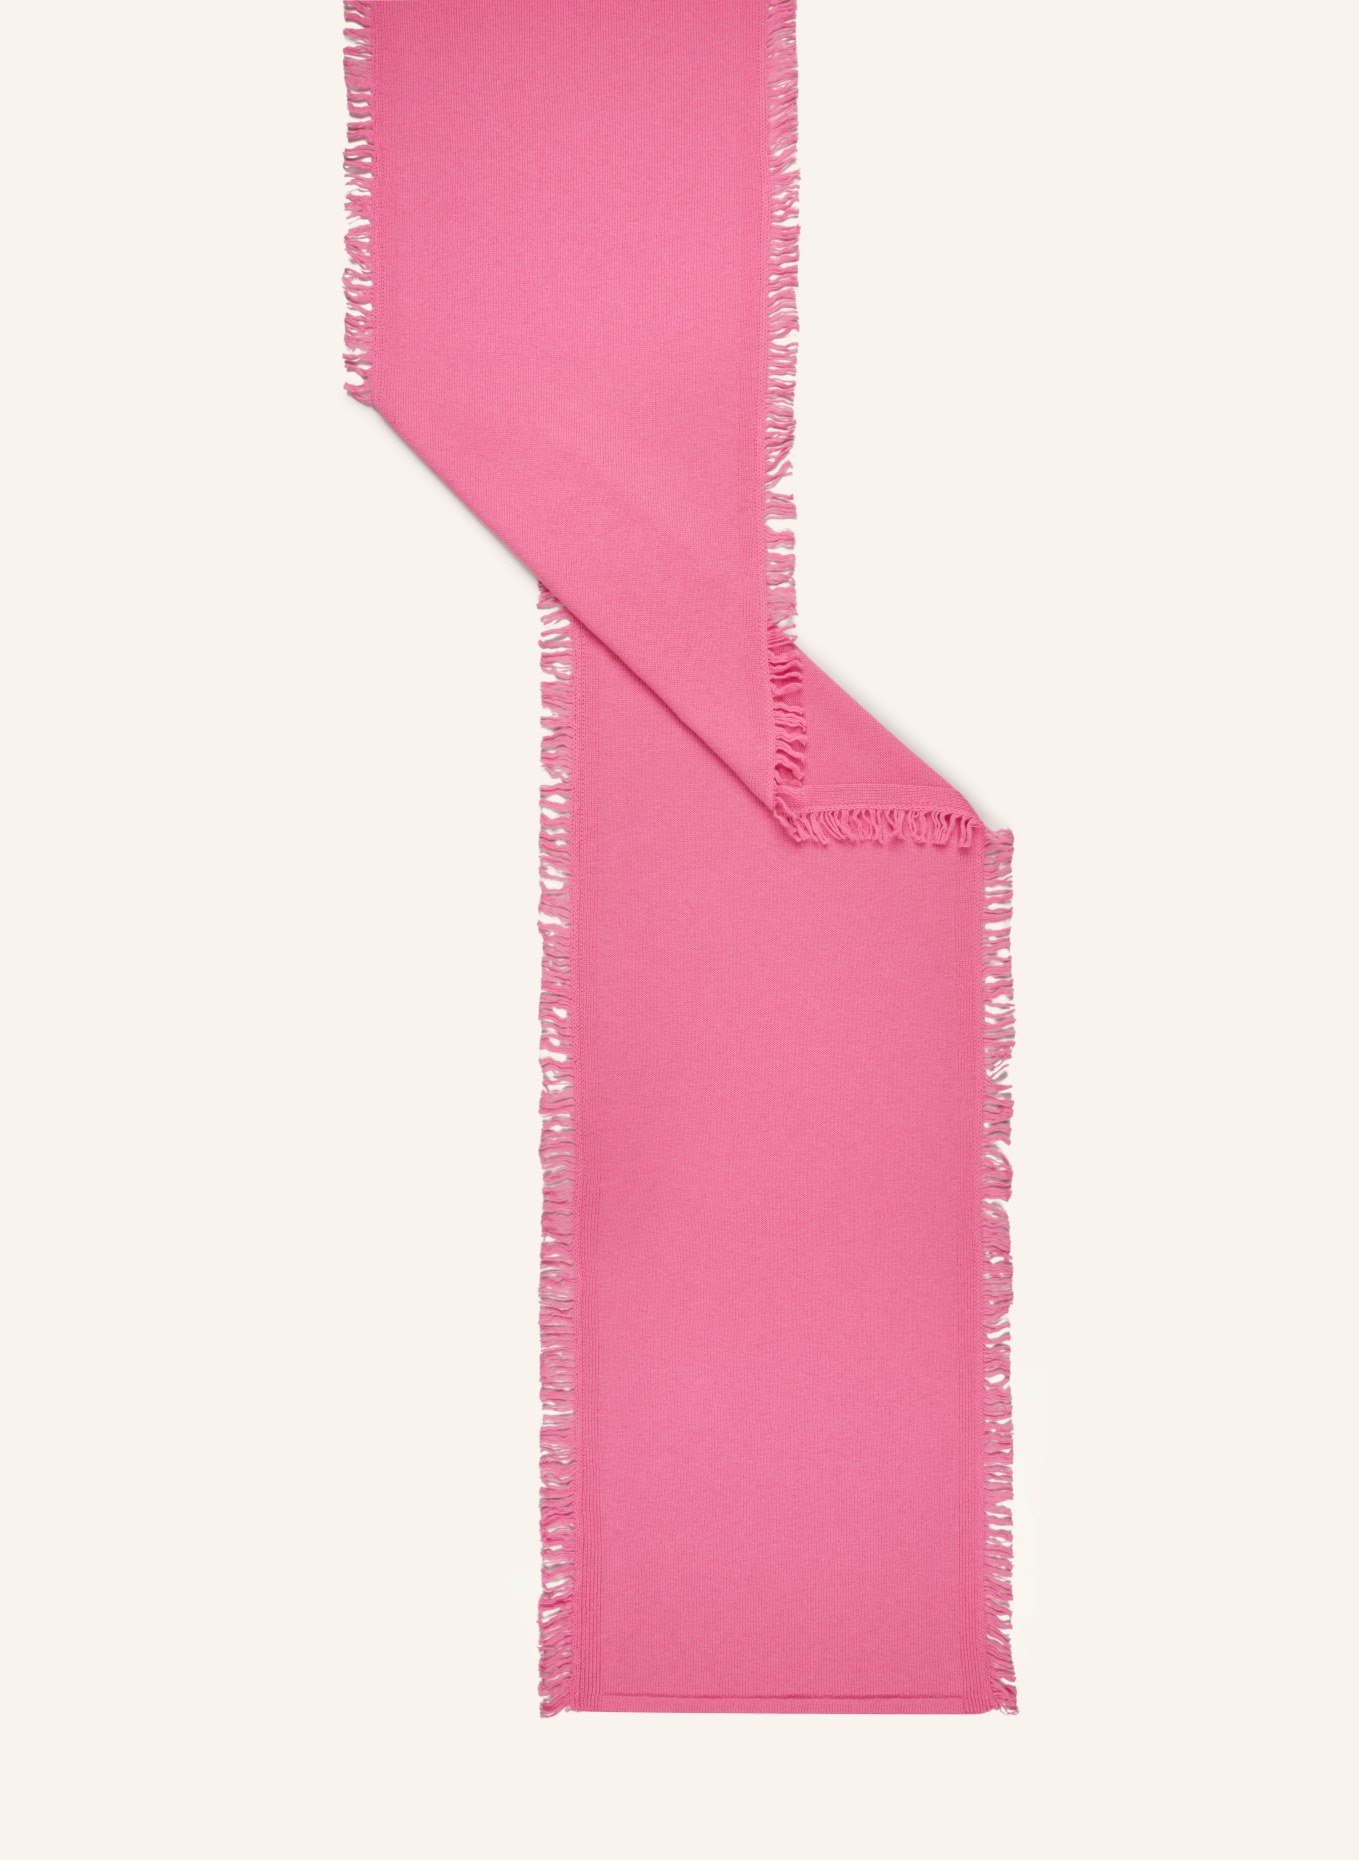 MAERZ MUENCHEN Schal, Farbe: PINK (Bild 2)